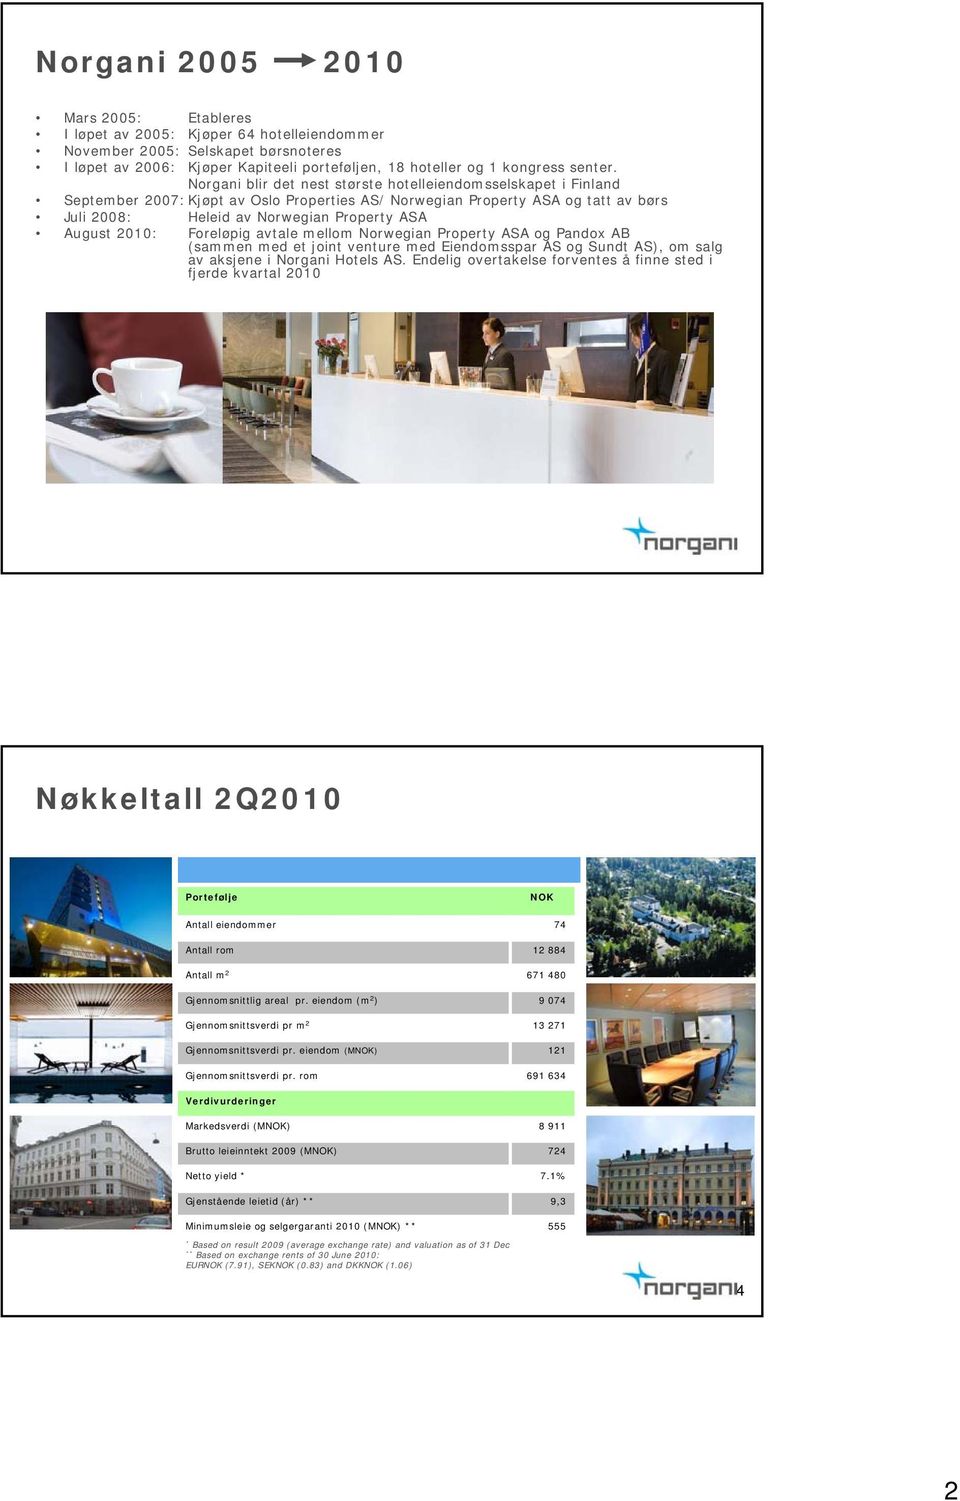 Norgani blir det nest største hotelleiendomsselskapet i Finland September 2007: Kjøpt av Oslo Properties AS/ Norwegian Property ASA og tatt av børs Juli 2008: Heleid av Norwegian Property ASA August